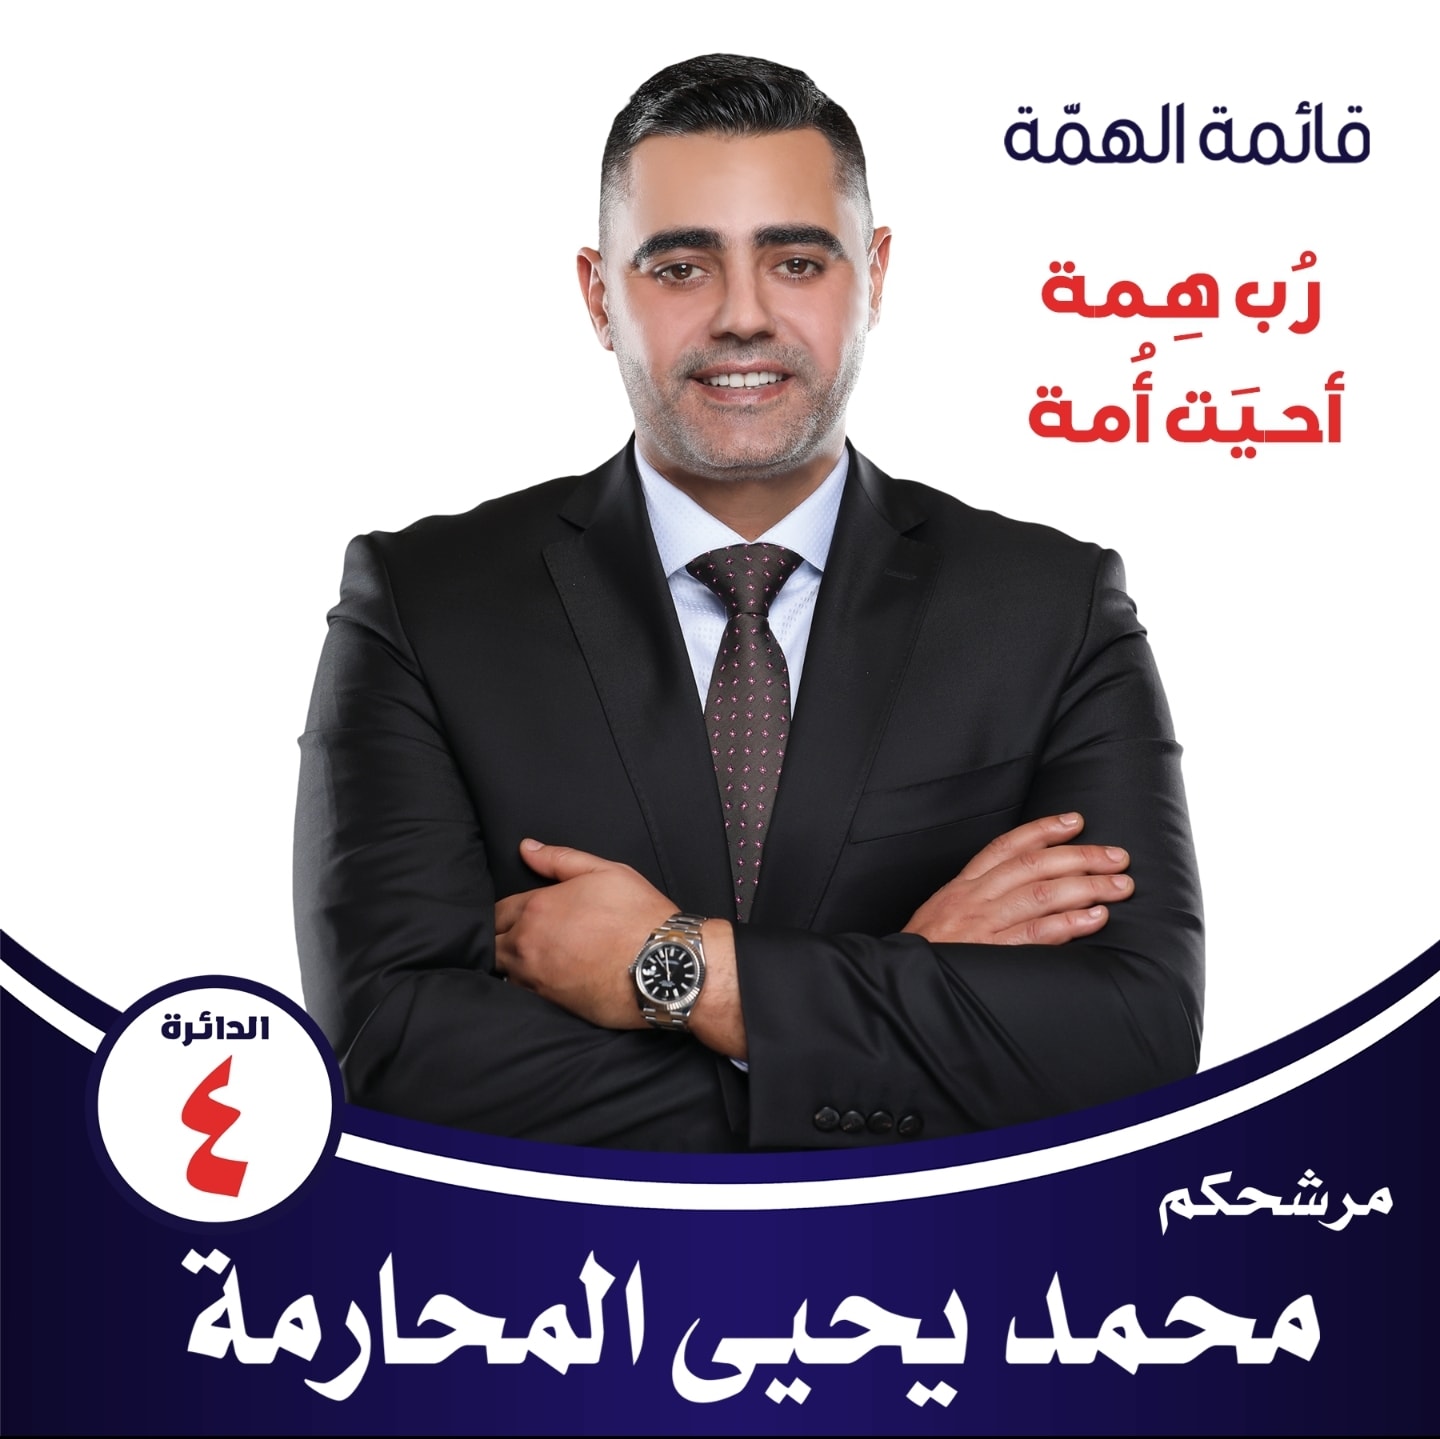 استهداف الدعاية الإعلامية للمرشح محمد المحارمة 